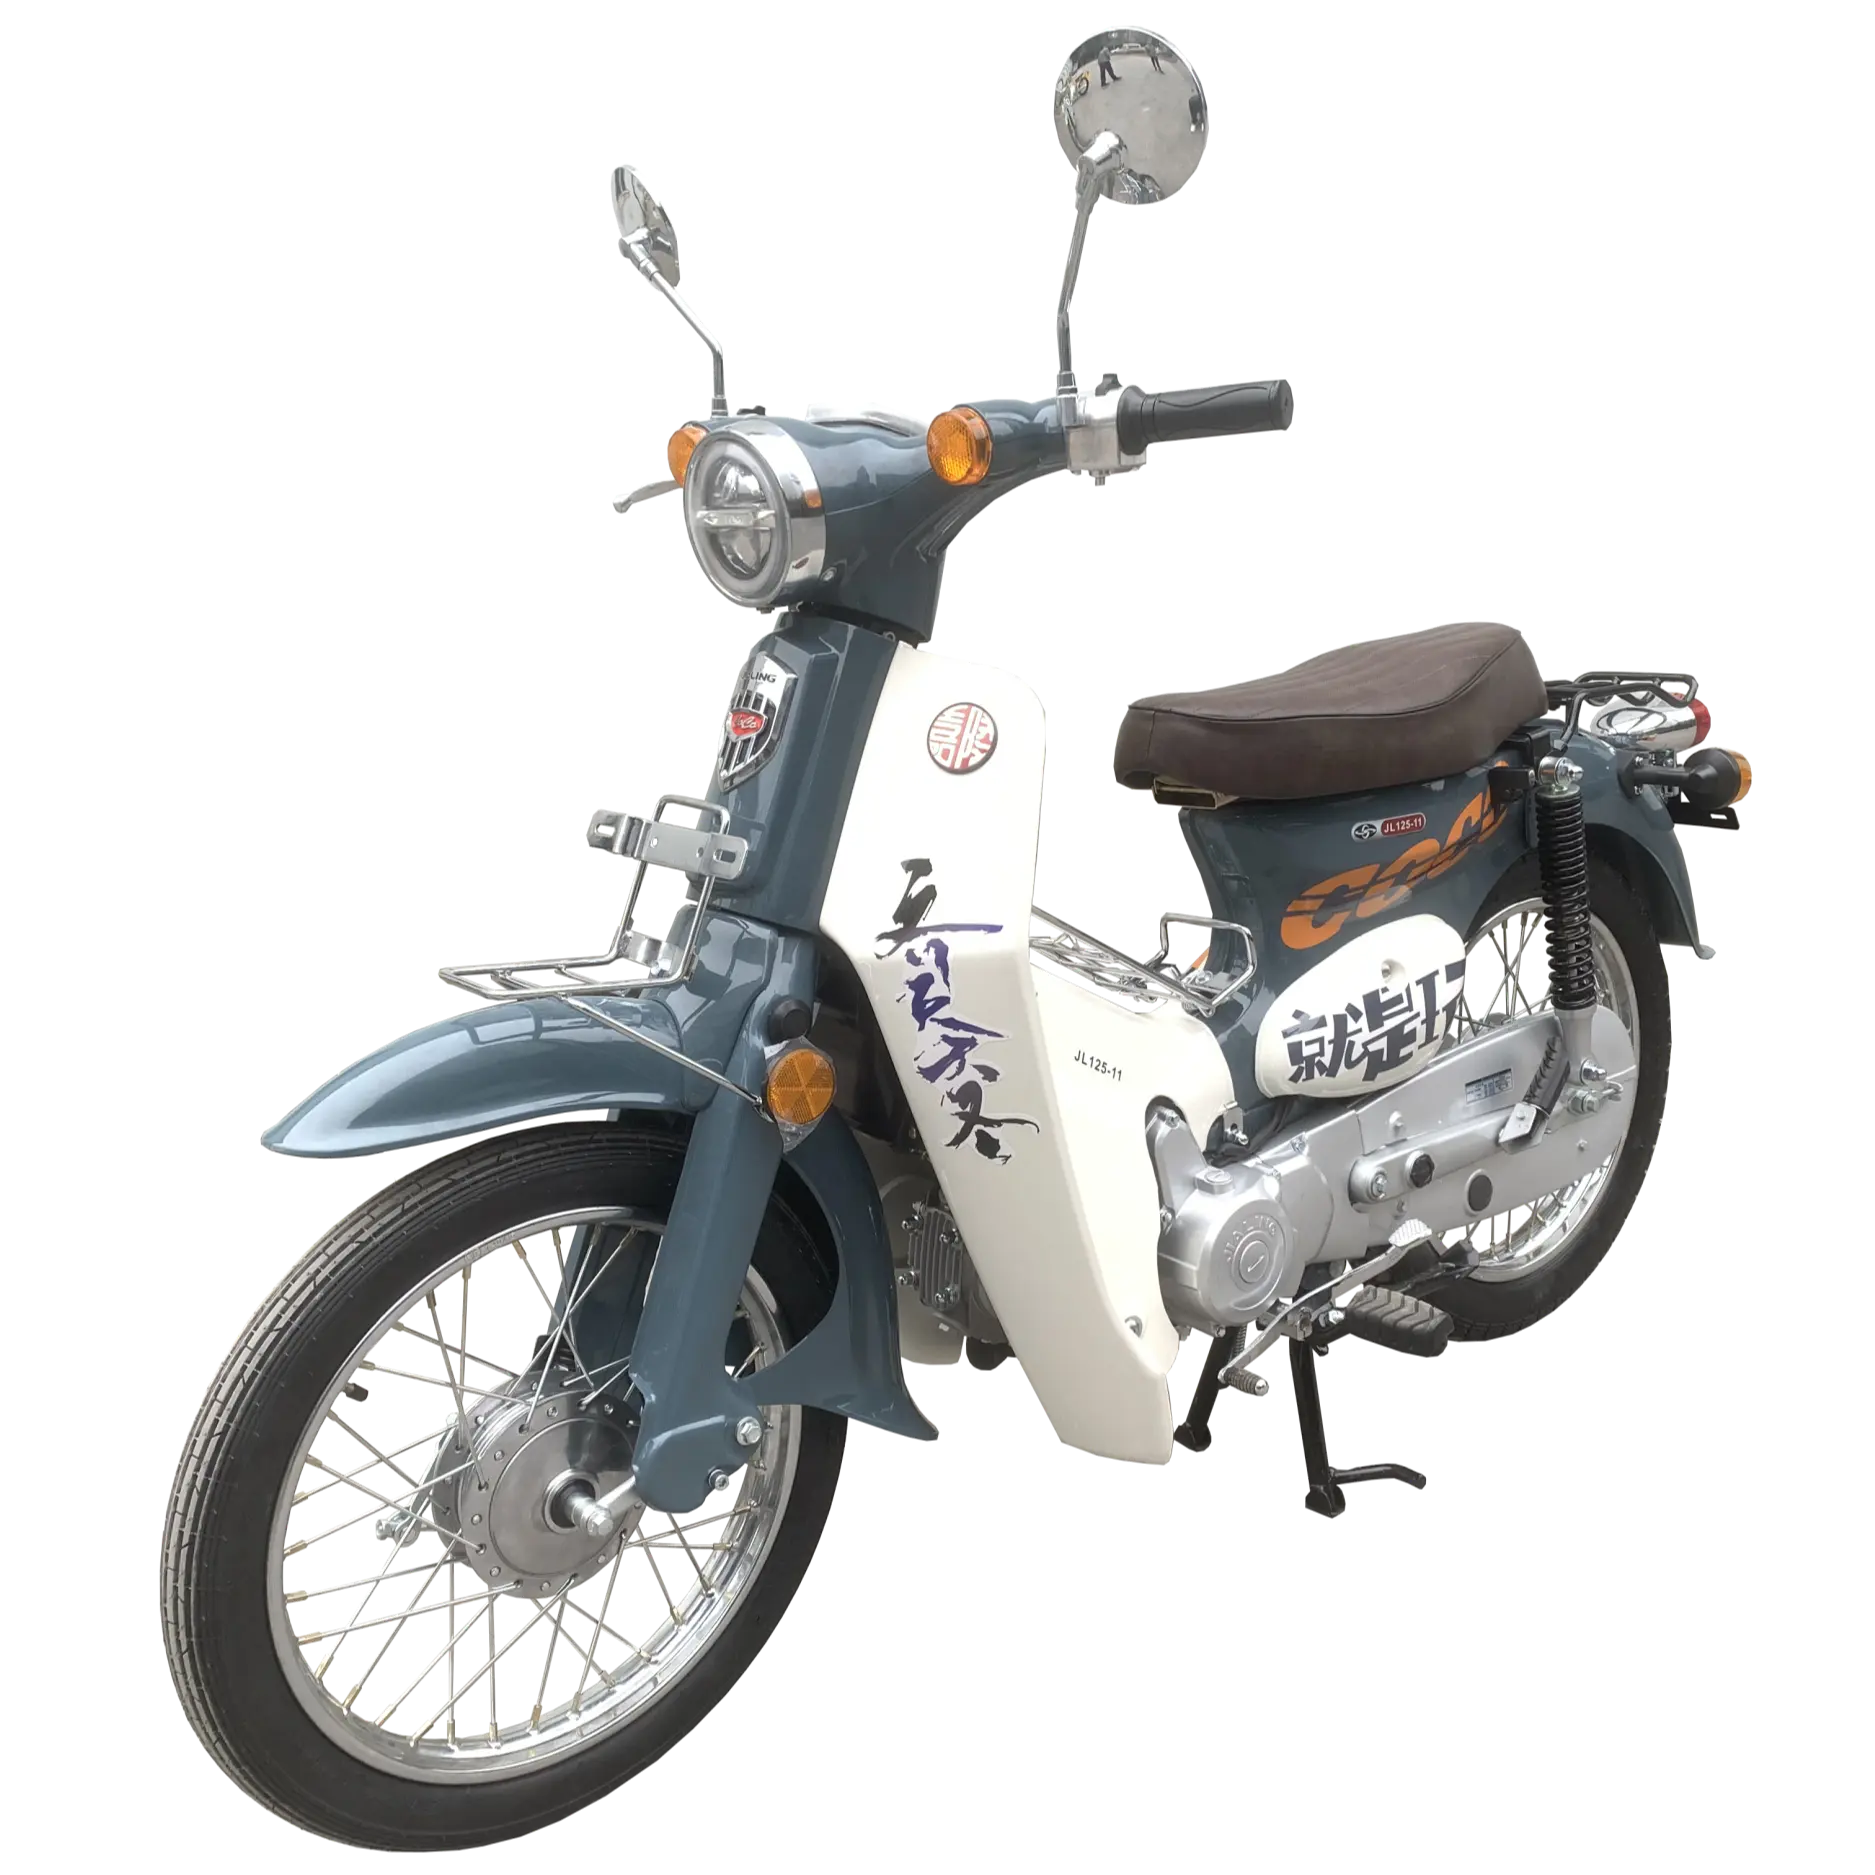 Motos एक Gasolina फैशन मॉडल jialing सस्ते मोटरसाइकिल 70cc क्लासिक मोटरसाइकिल 70cc गर्म बिक्री कारखाने मोटरसाइकिल 70CC